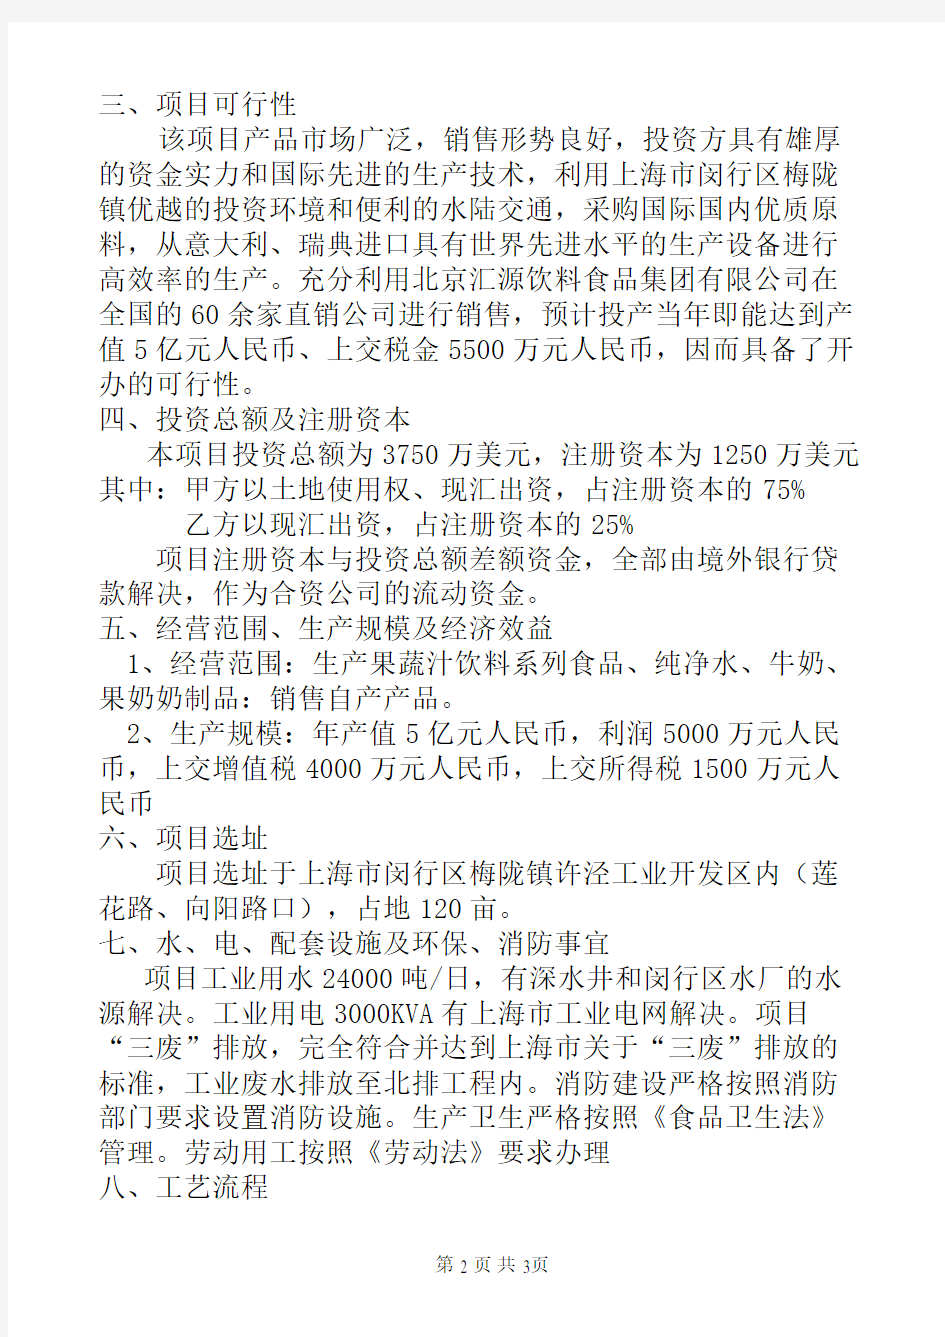 北京汇源饮料食品集团上海有限公司项目建议书